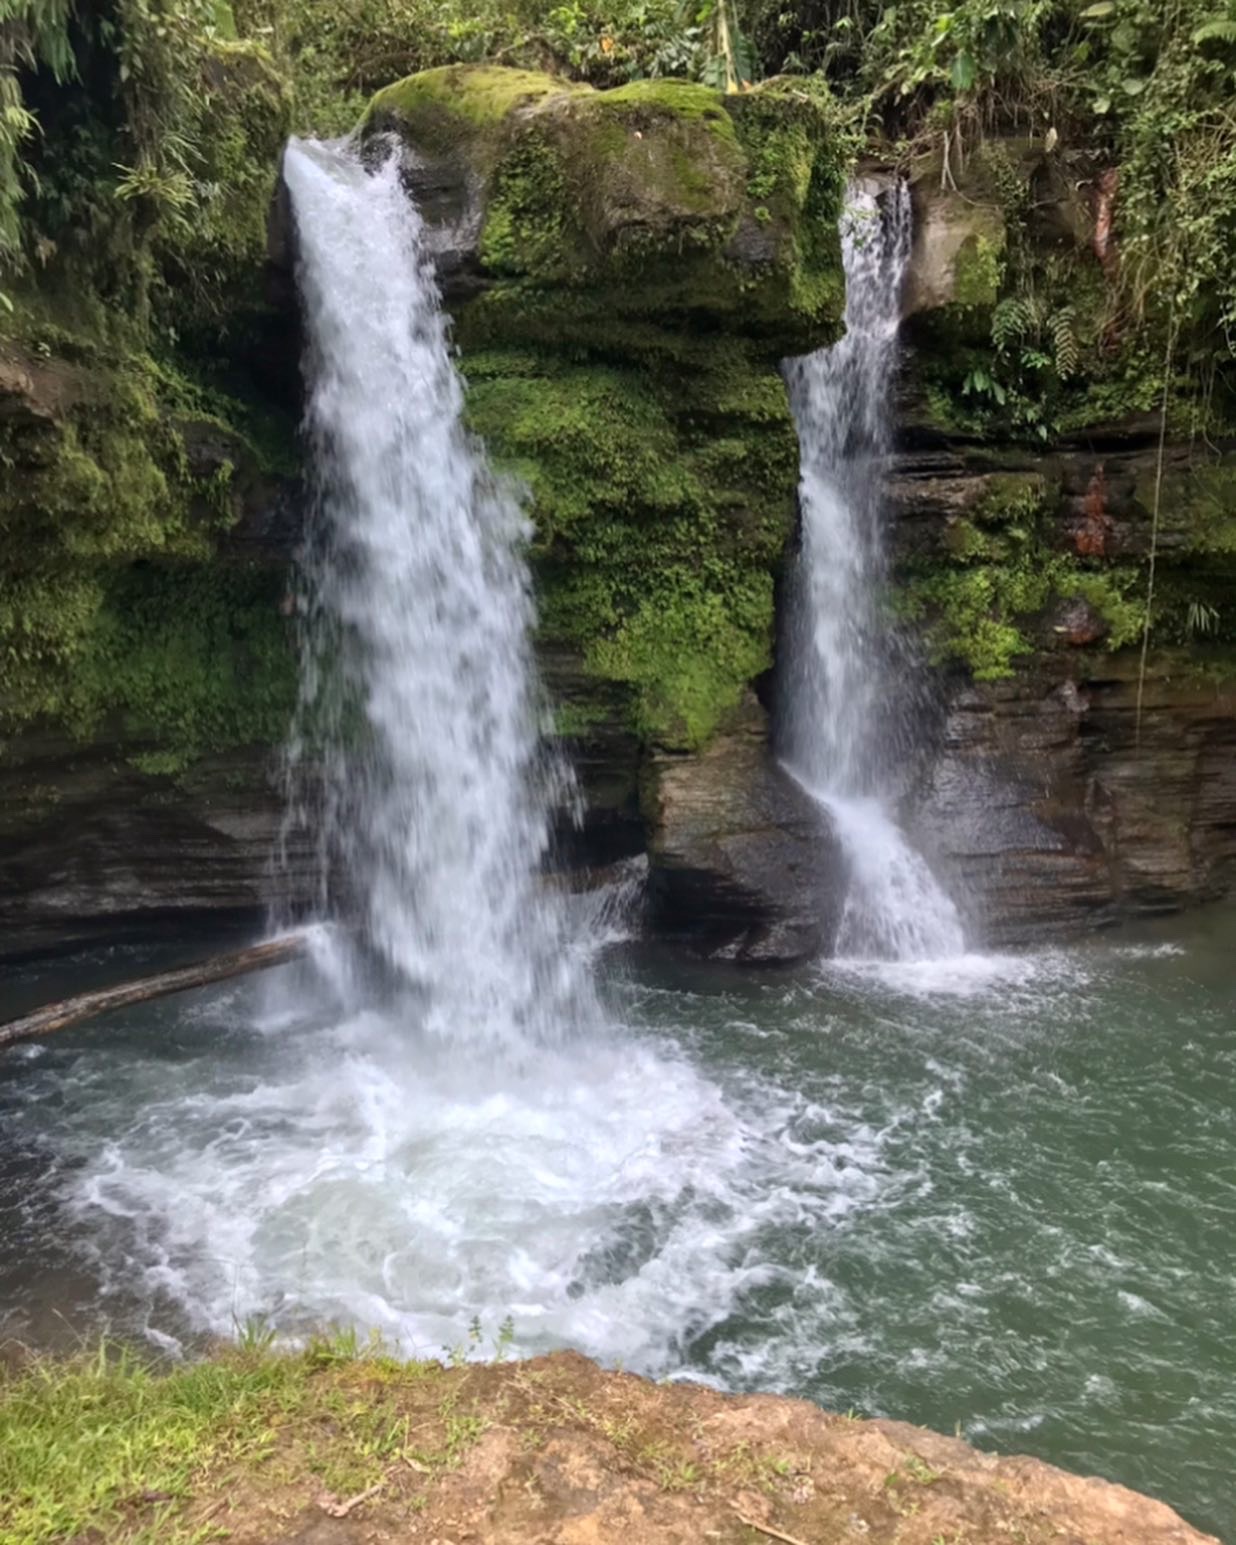 Amarun Pakcha, the waterfall in Guagua Sumaco.